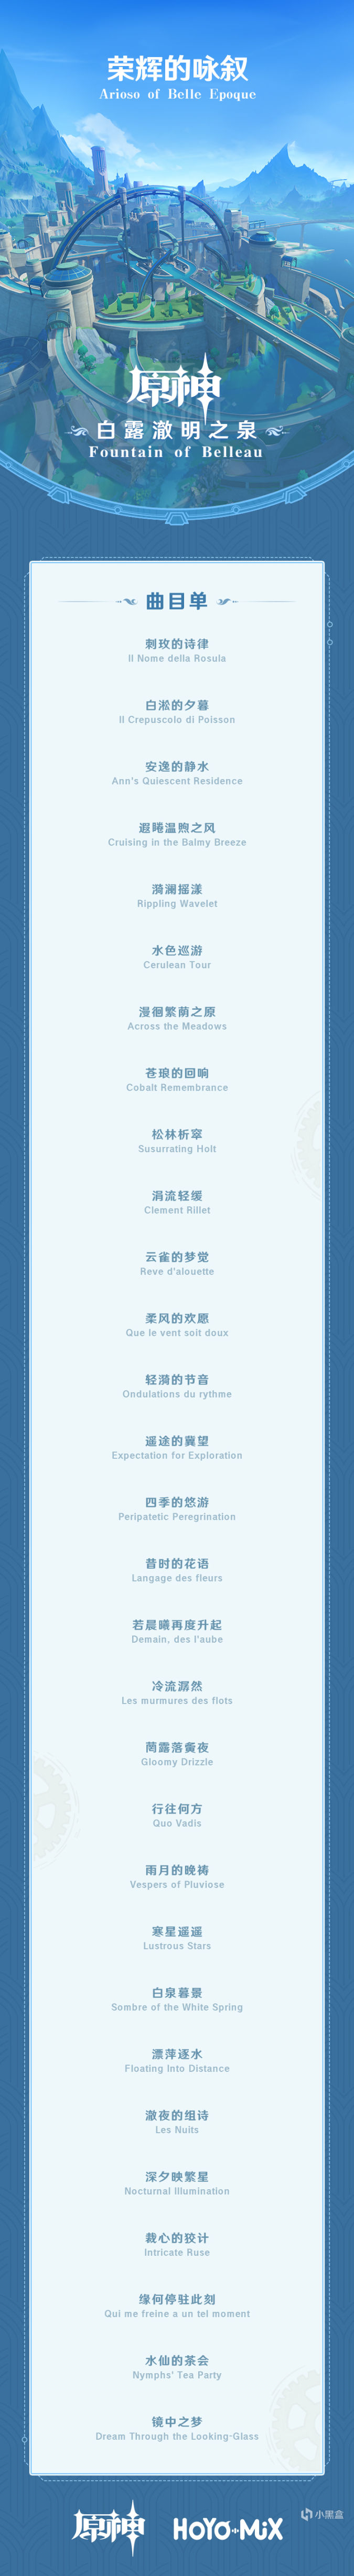 《原神》枫丹篇OST现已正式上线-第2张